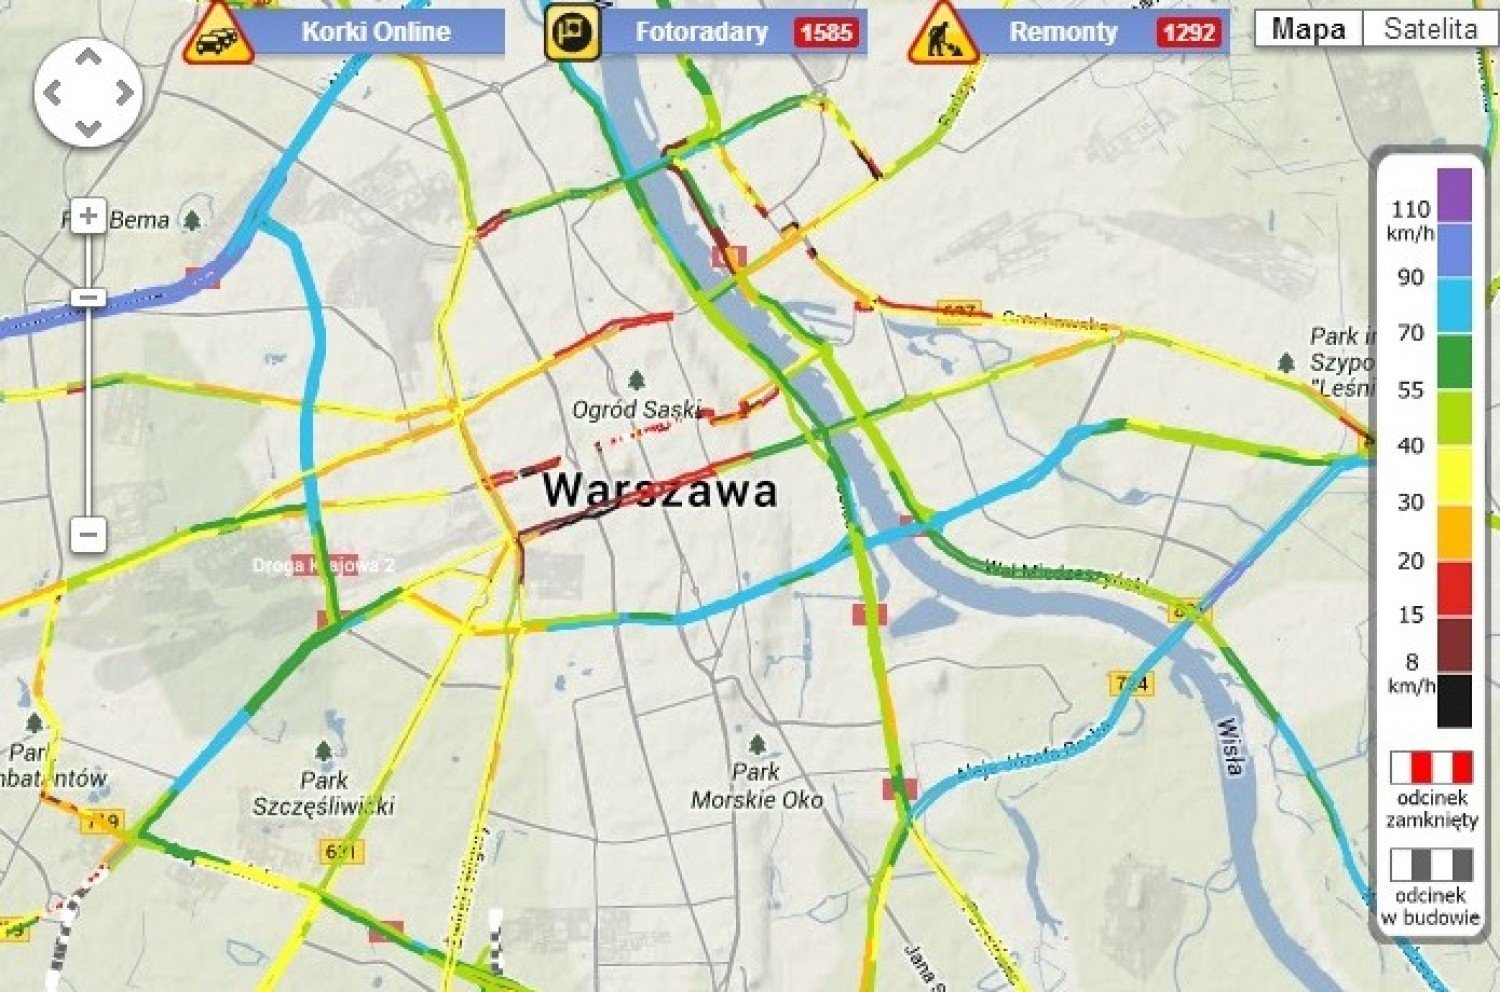 SAMOCHODOWA MAPA POLSKI [fotoradary, wyznaczanie trasy, korki w Warszawie]  | Warszawa Nasze Miasto